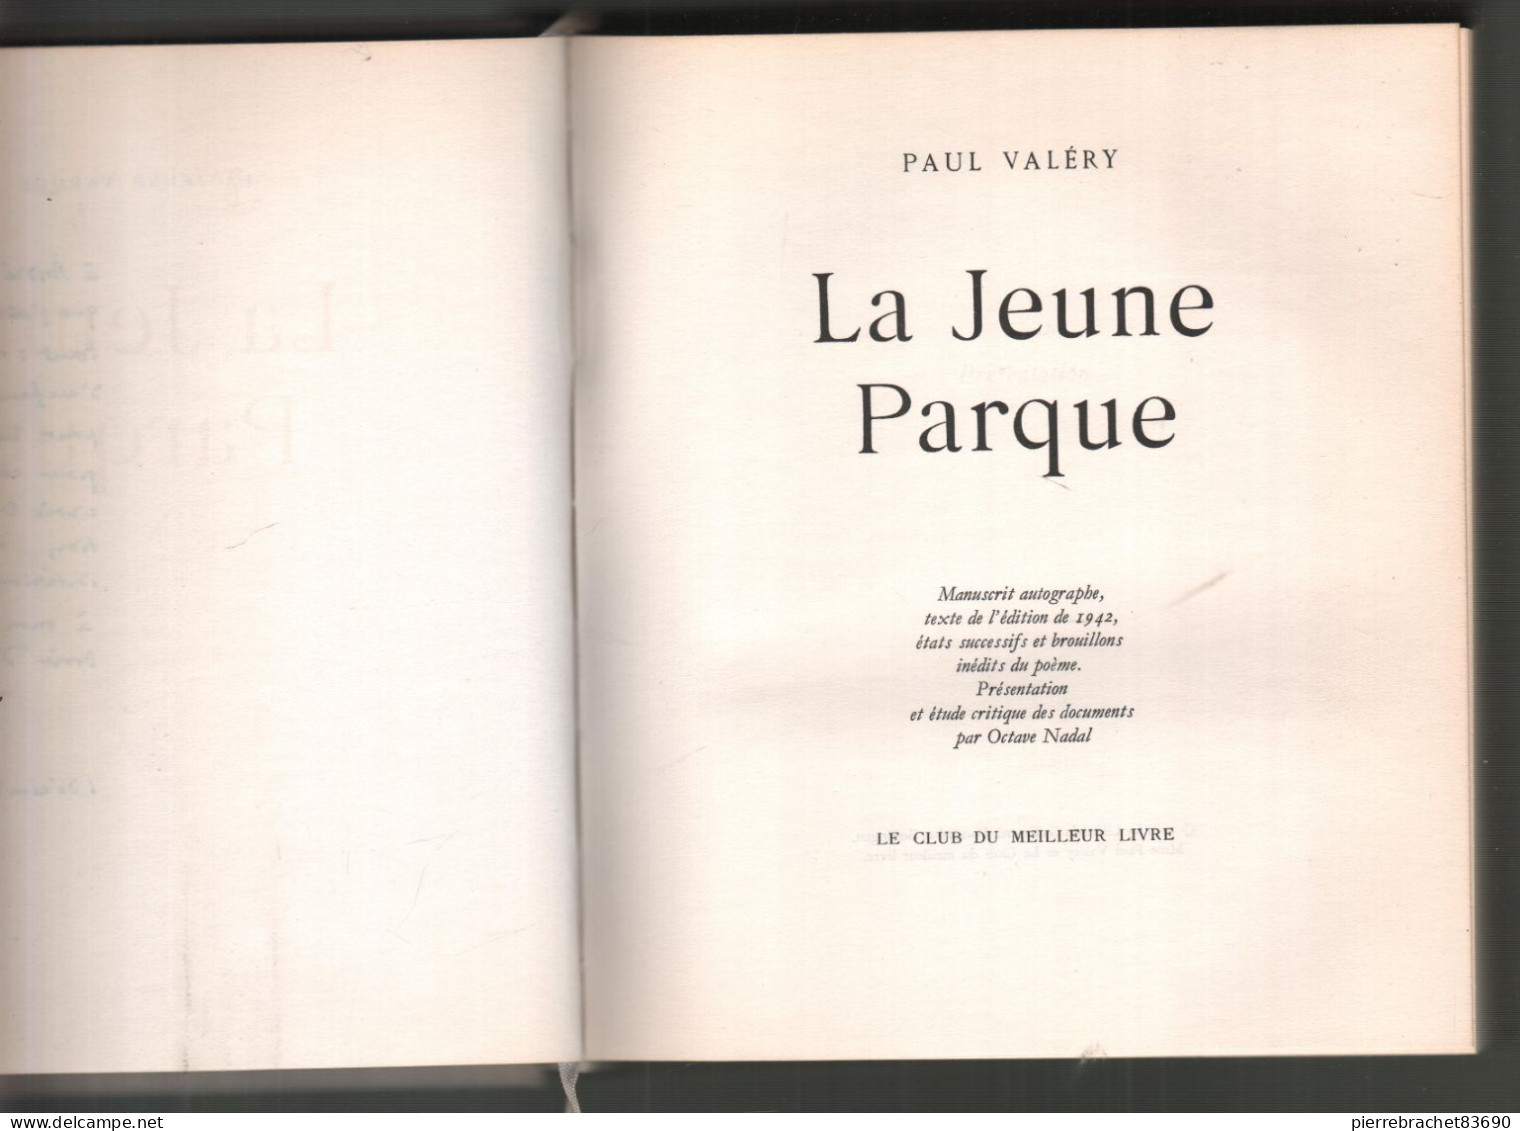 Paul Valéry. La Jeune Parque. Etude Critique Par Octave Nadal 1957. Numéroté CCCXXVI/ D - Non Classés